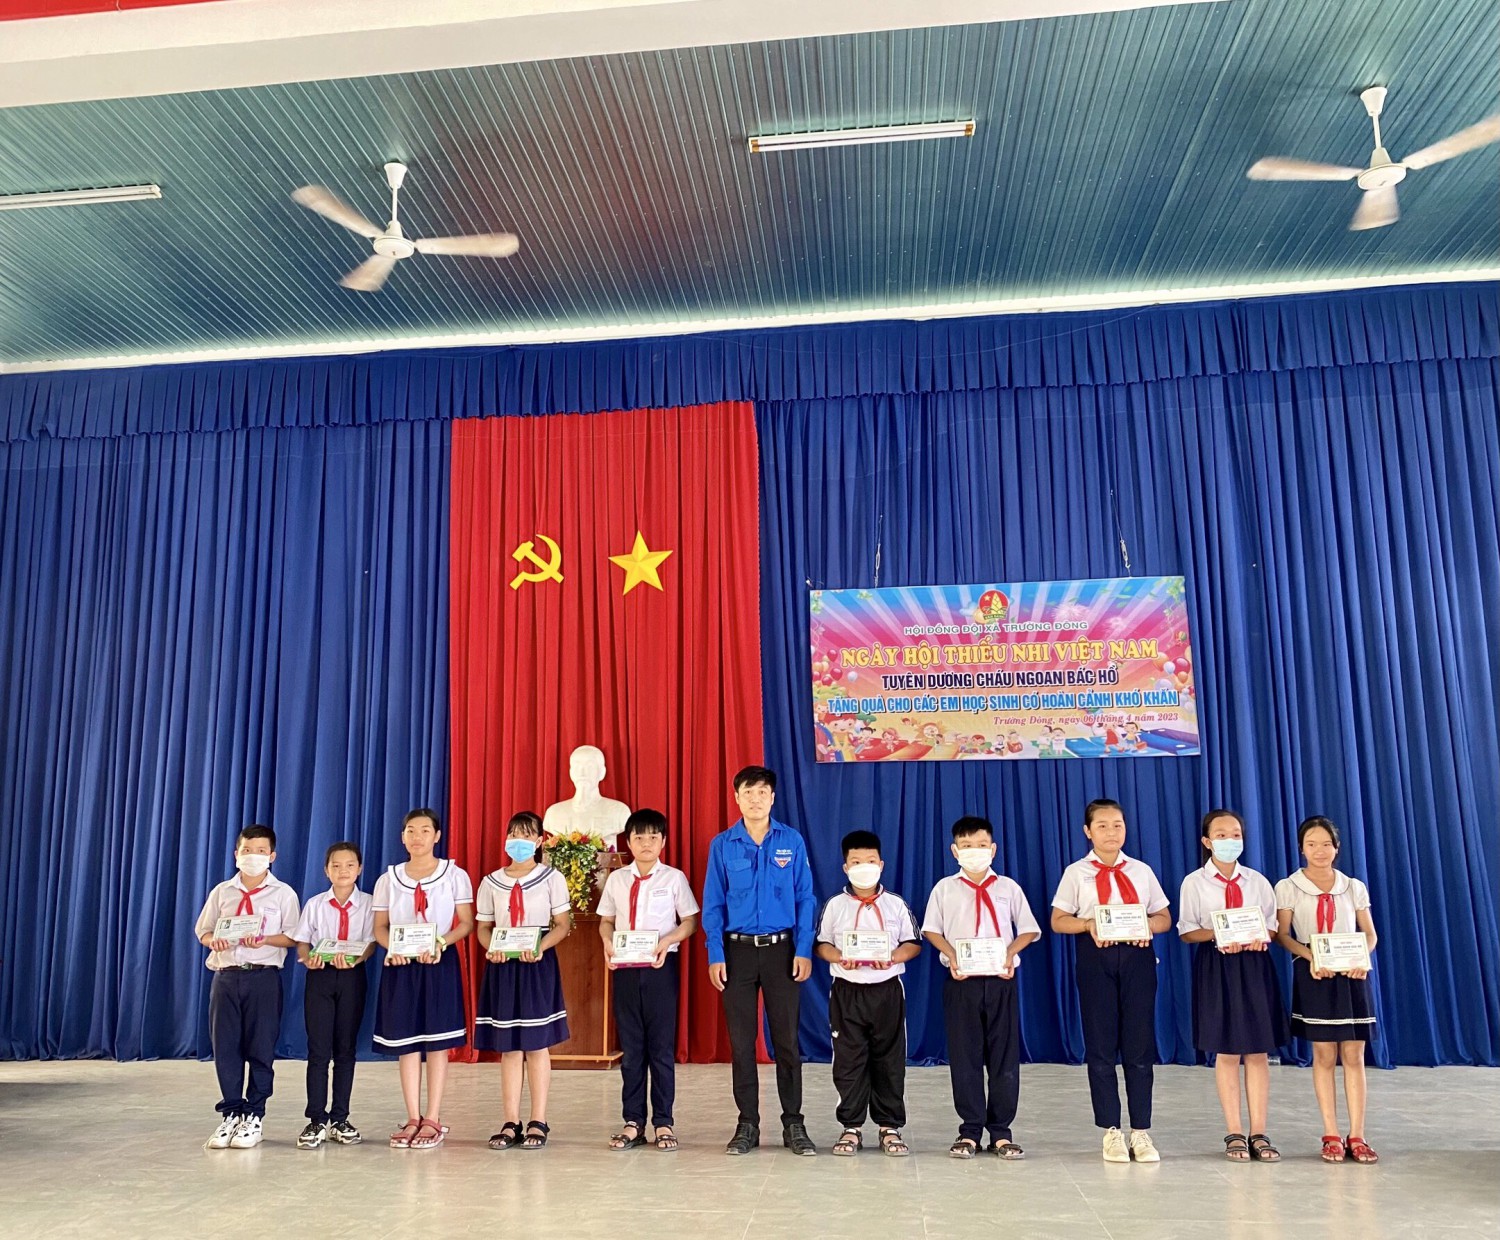 Hội đồng đội xã Trường Đông tổ chức  “Ngày hội Thiếu nhi Việt Nam” và tuyên dương “Cháu ngoan Bác Hồ”